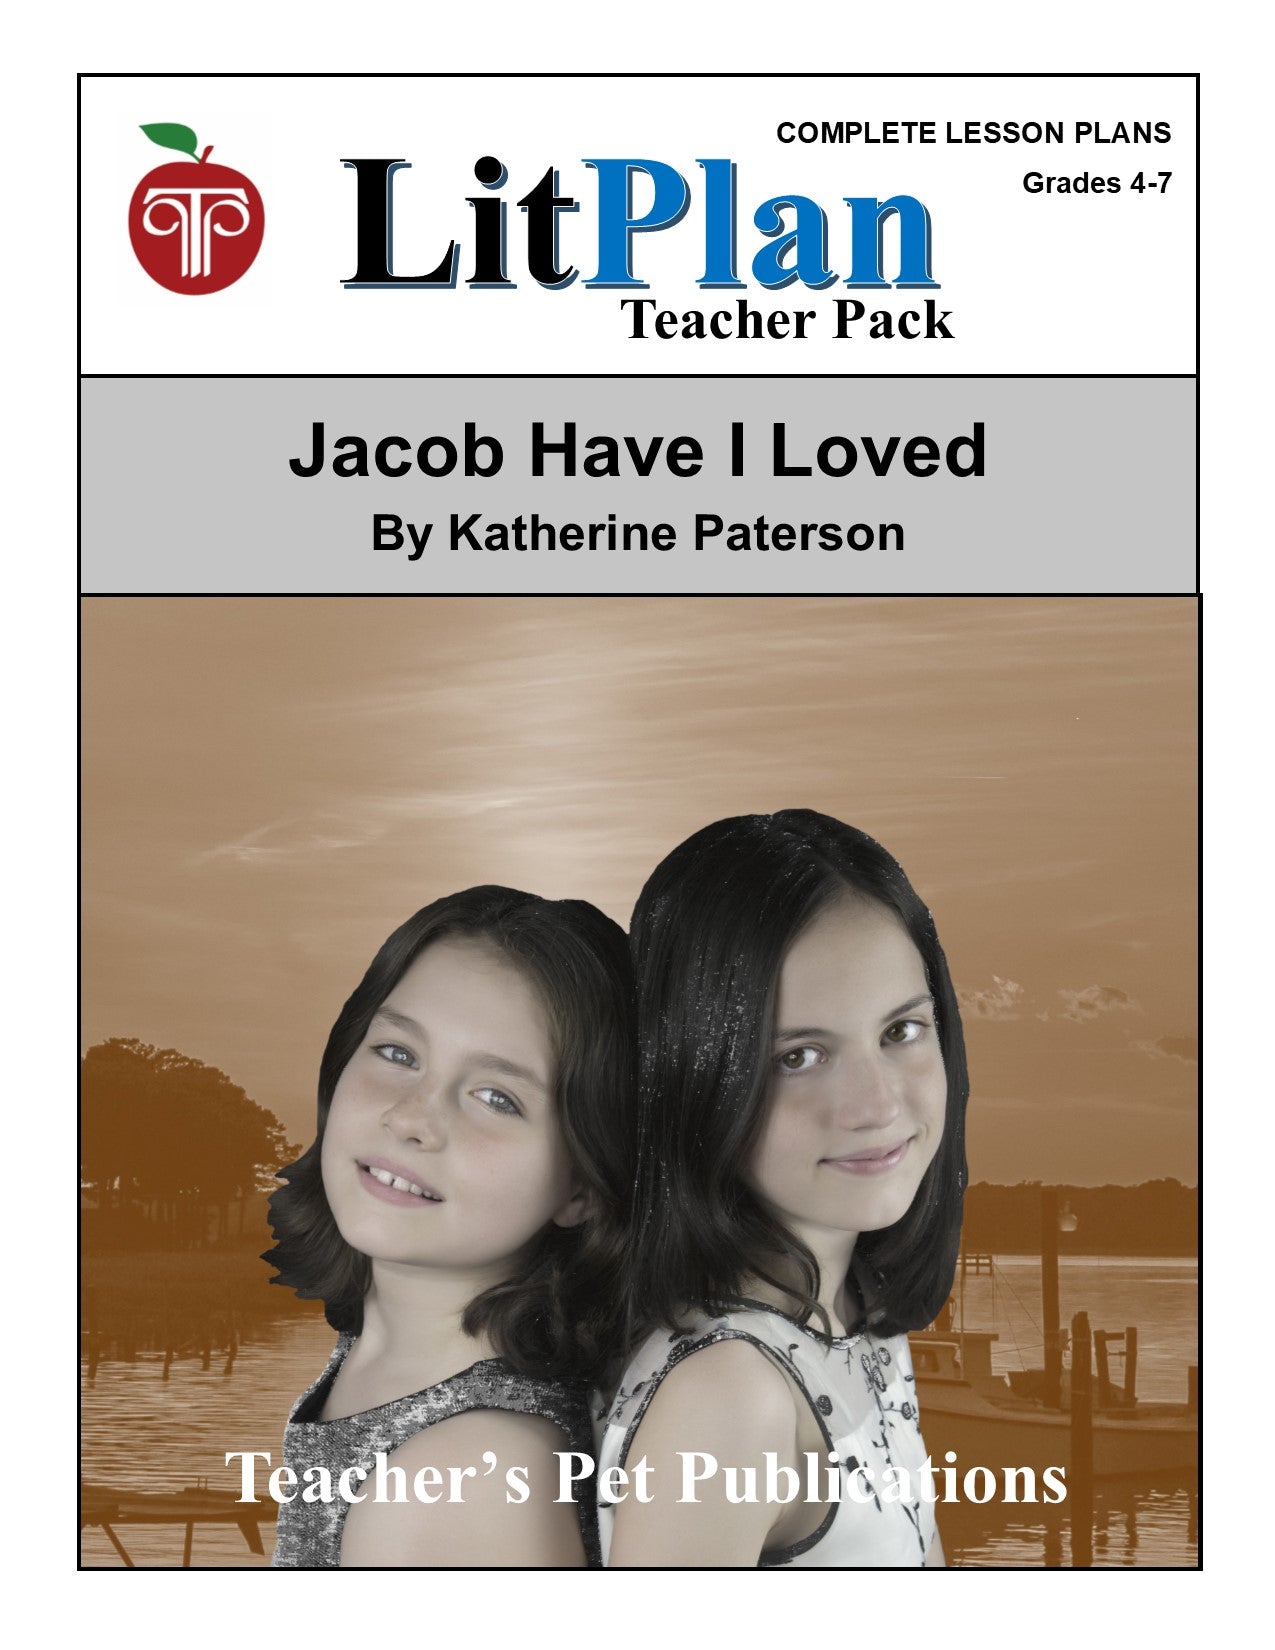 Jacob Have I Loved: LitPlan Teacher Pack Grades 4-7